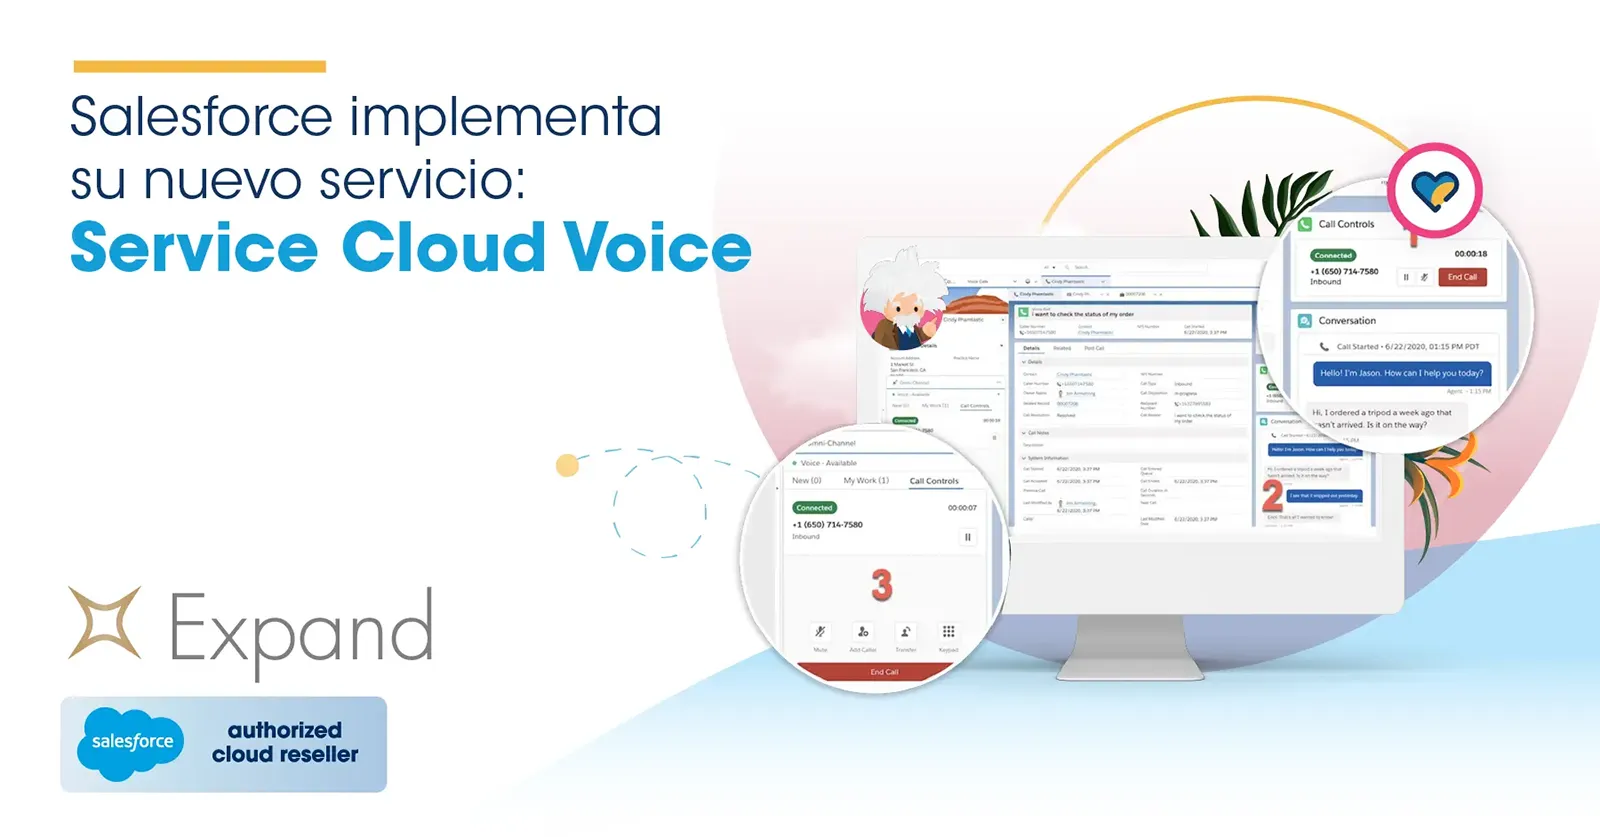 Salesforce implementa su nuevo servicio: Service Cloud Voice